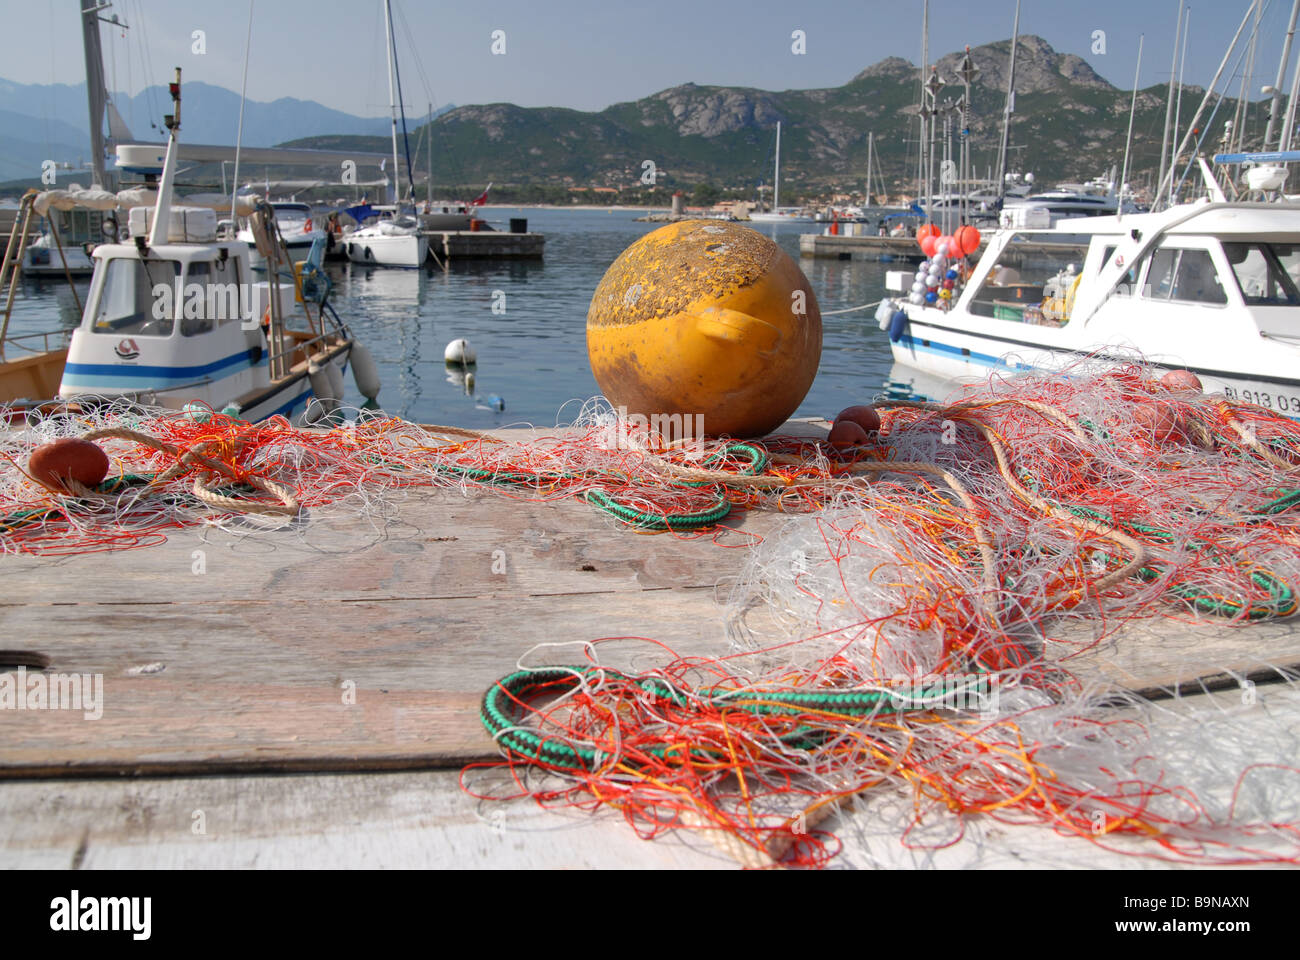 Les bateaux de pêche avec des filets sur le port de Calvi, Corse, France Banque D'Images